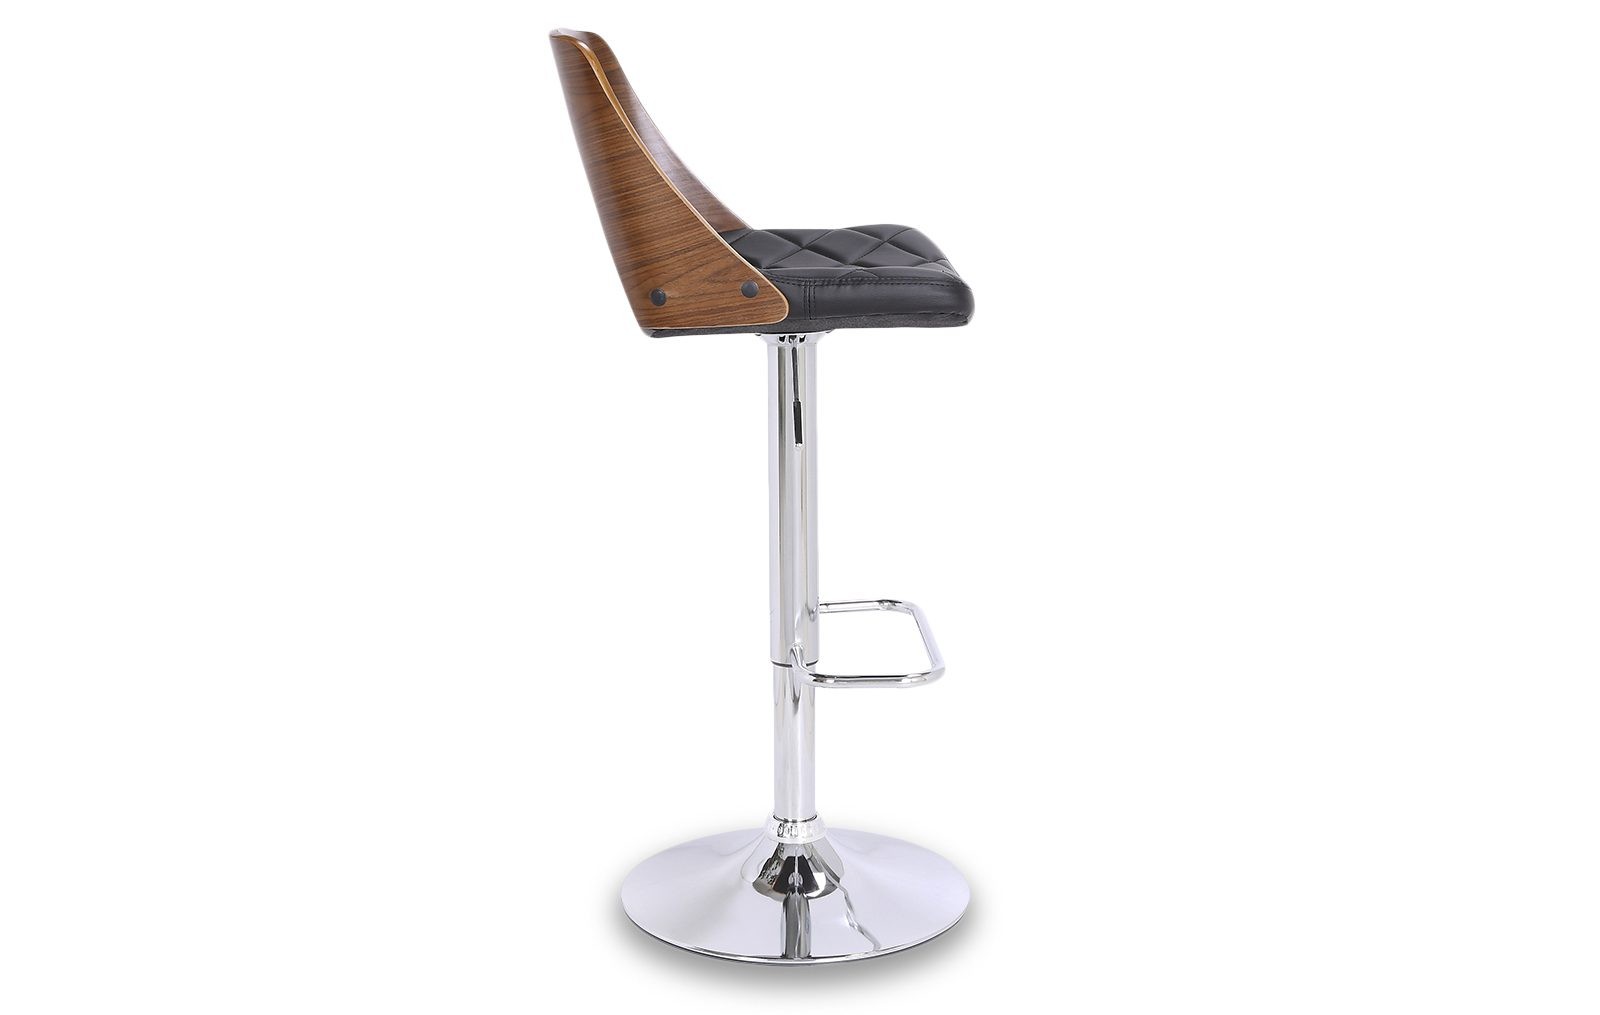 Барный стул - экокожа/ шпона ореха, ножка из хромированного металла (91-112)